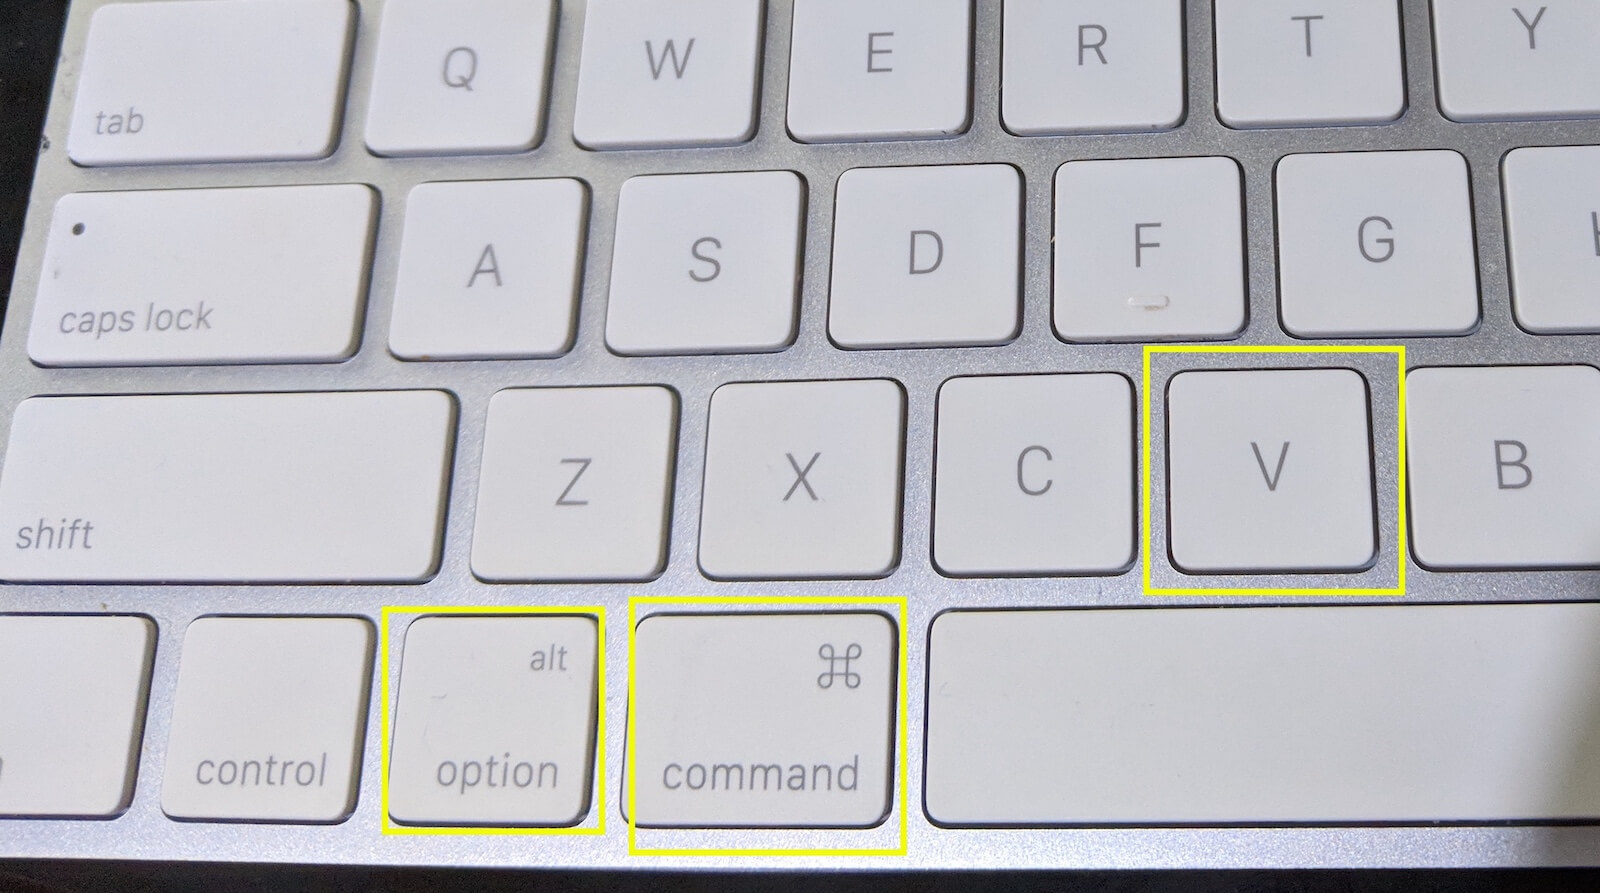 mac keyboard shortcut for paste